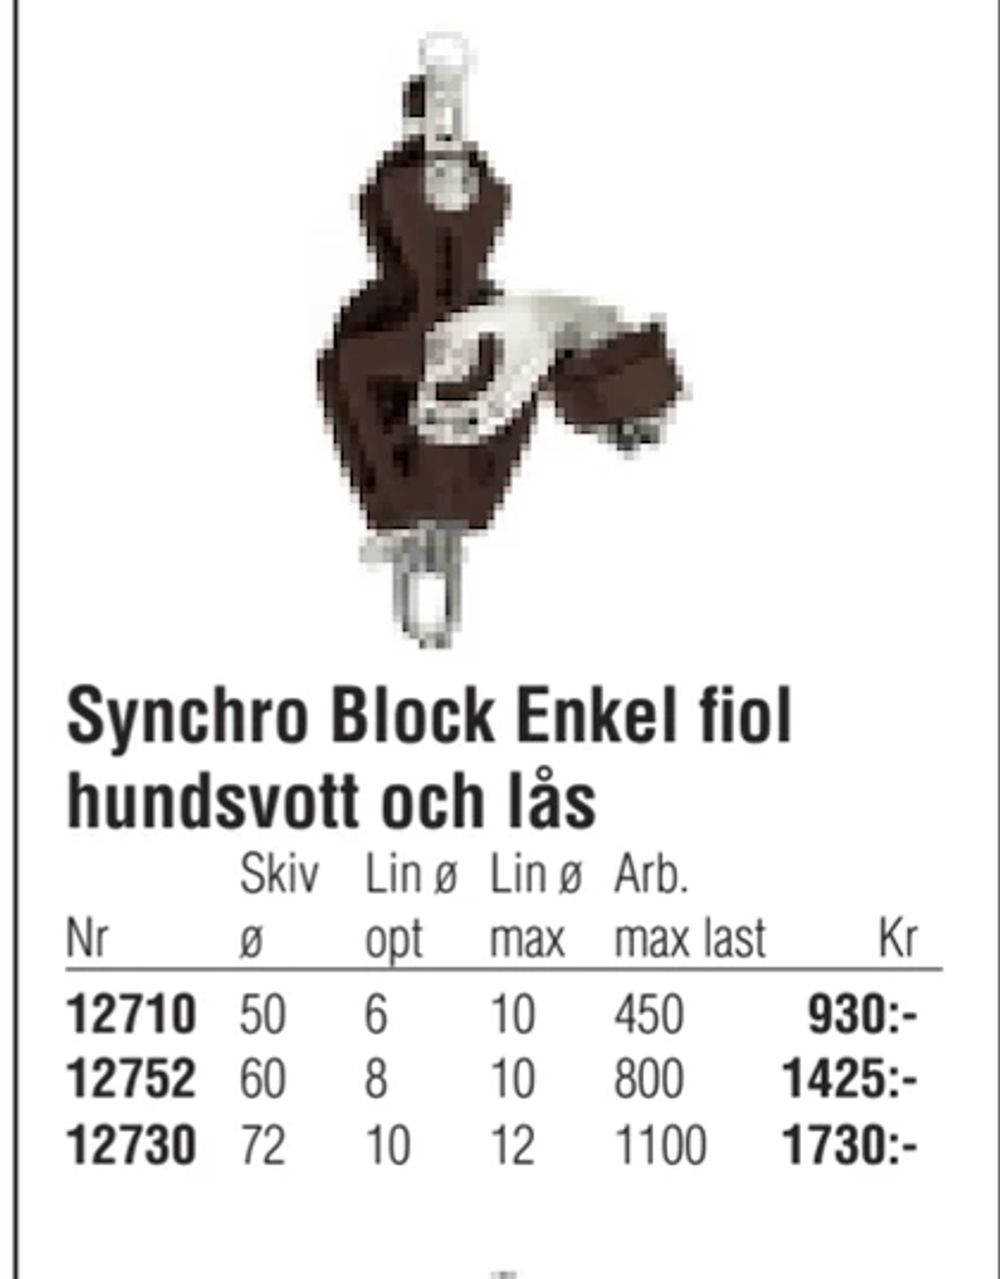 Erbjudanden på Synchro Block Enkel fiol hundsvott och lås från Erlandsons Brygga för 930 kr